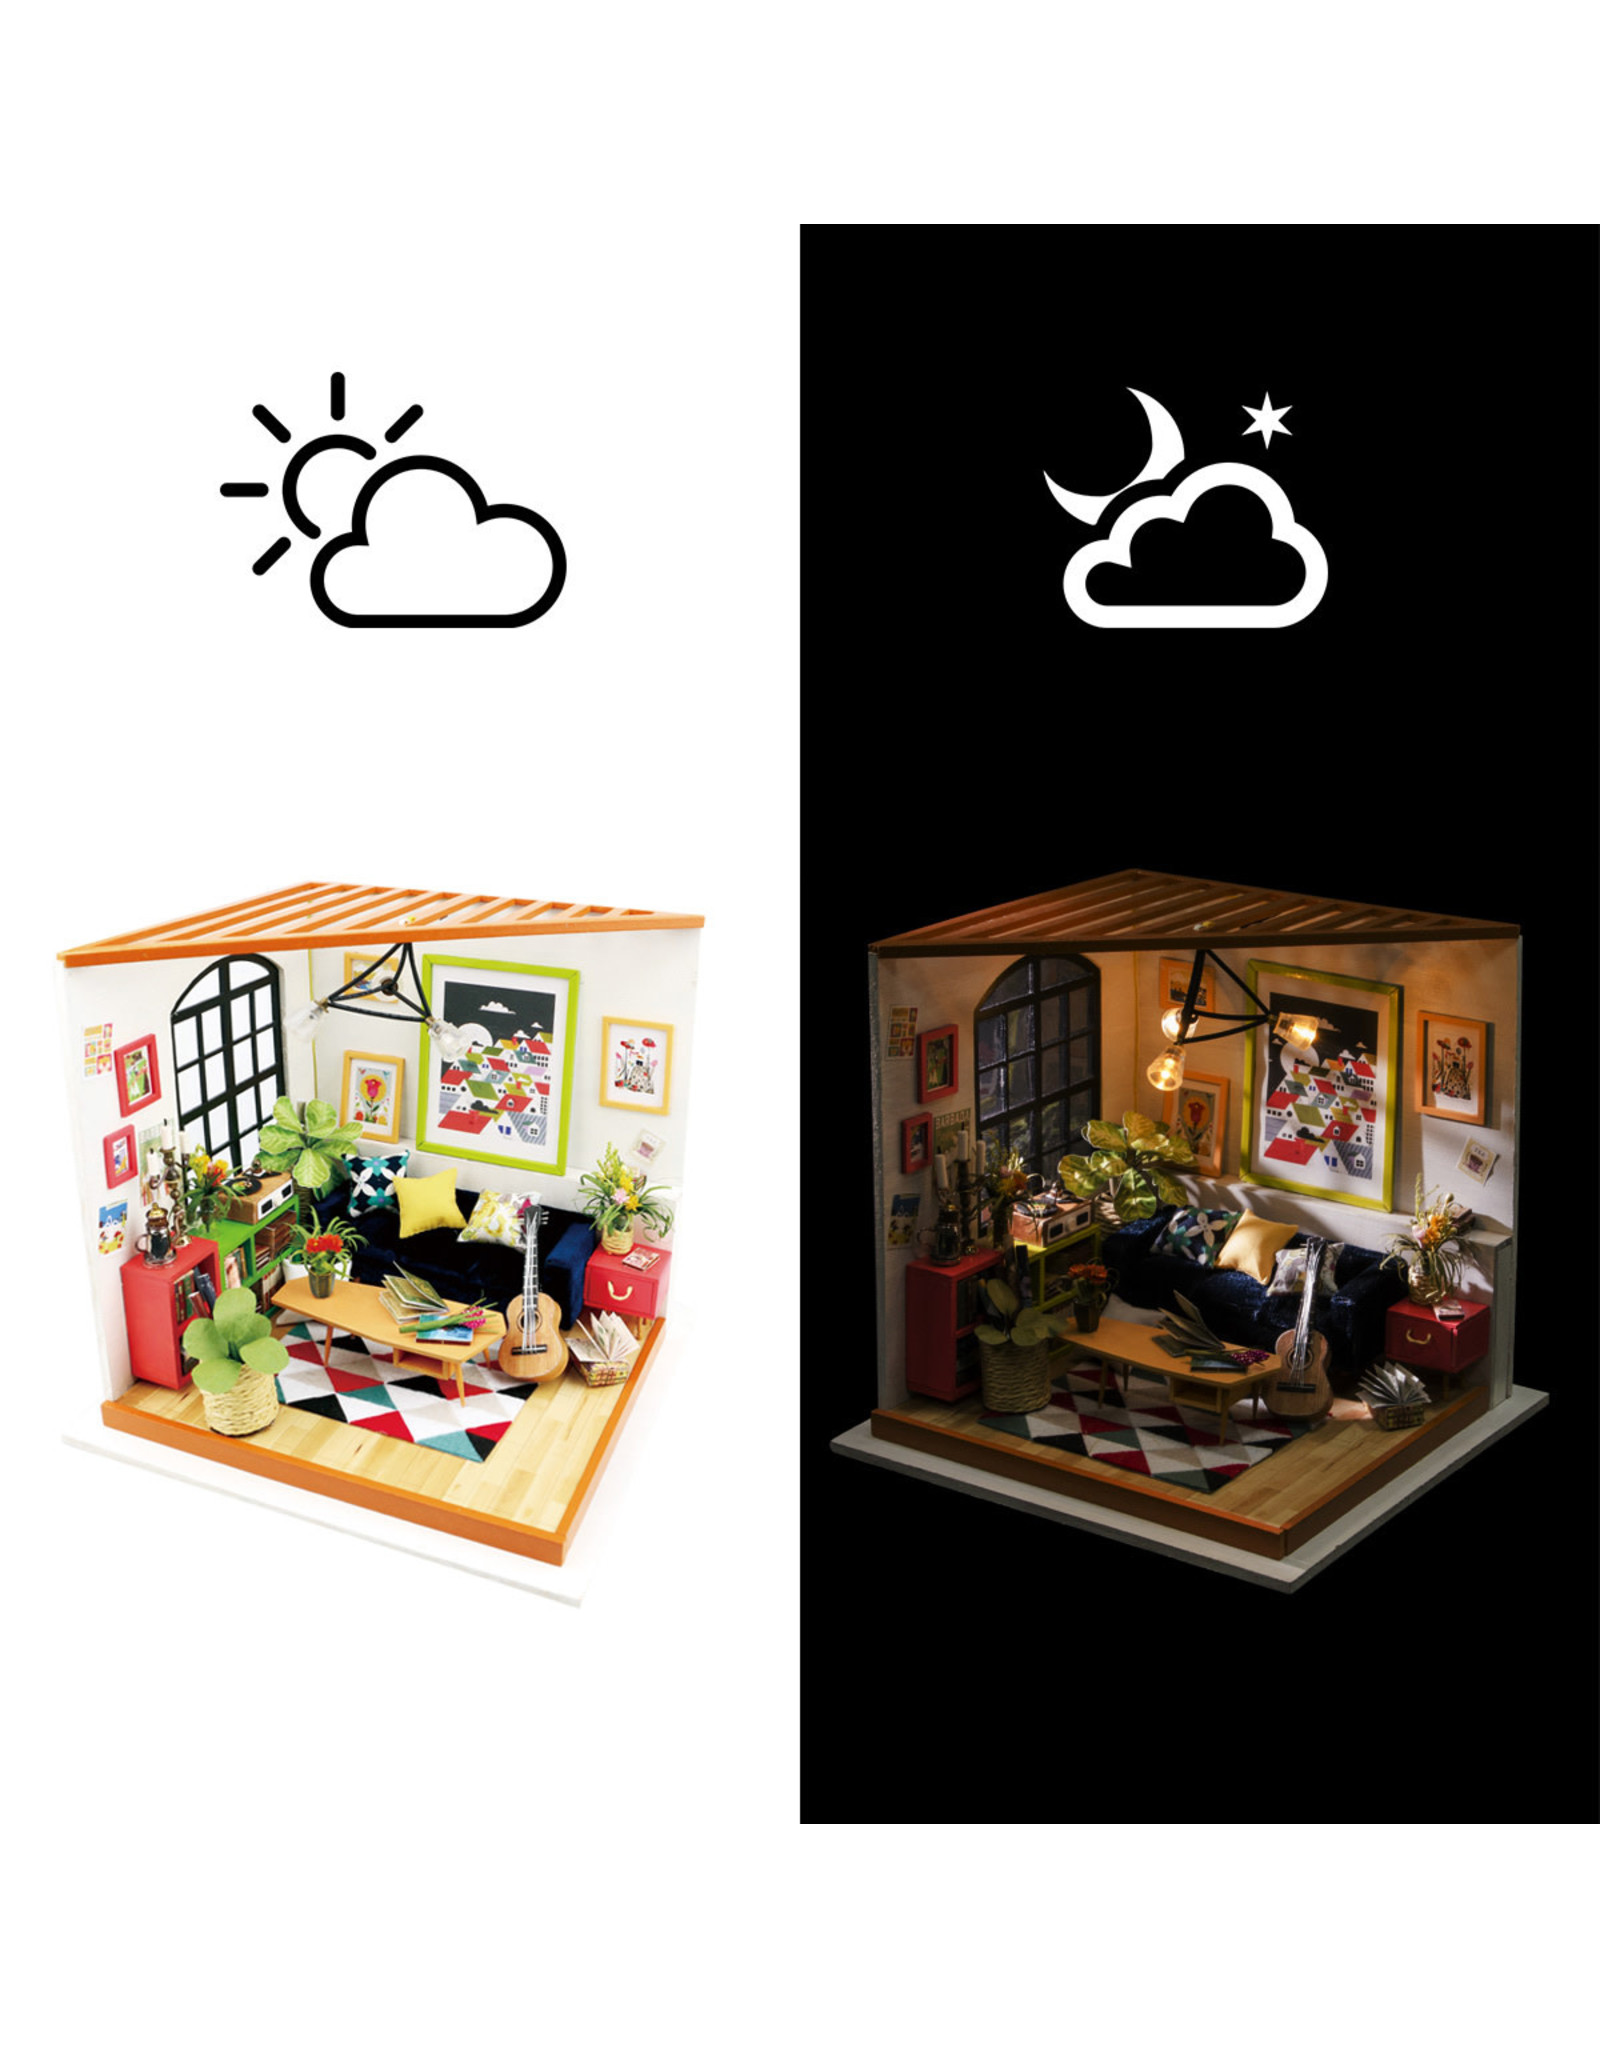 Rolife Locus's Sitting Room DG106 - Rolife DIY Miniature Dollhouse